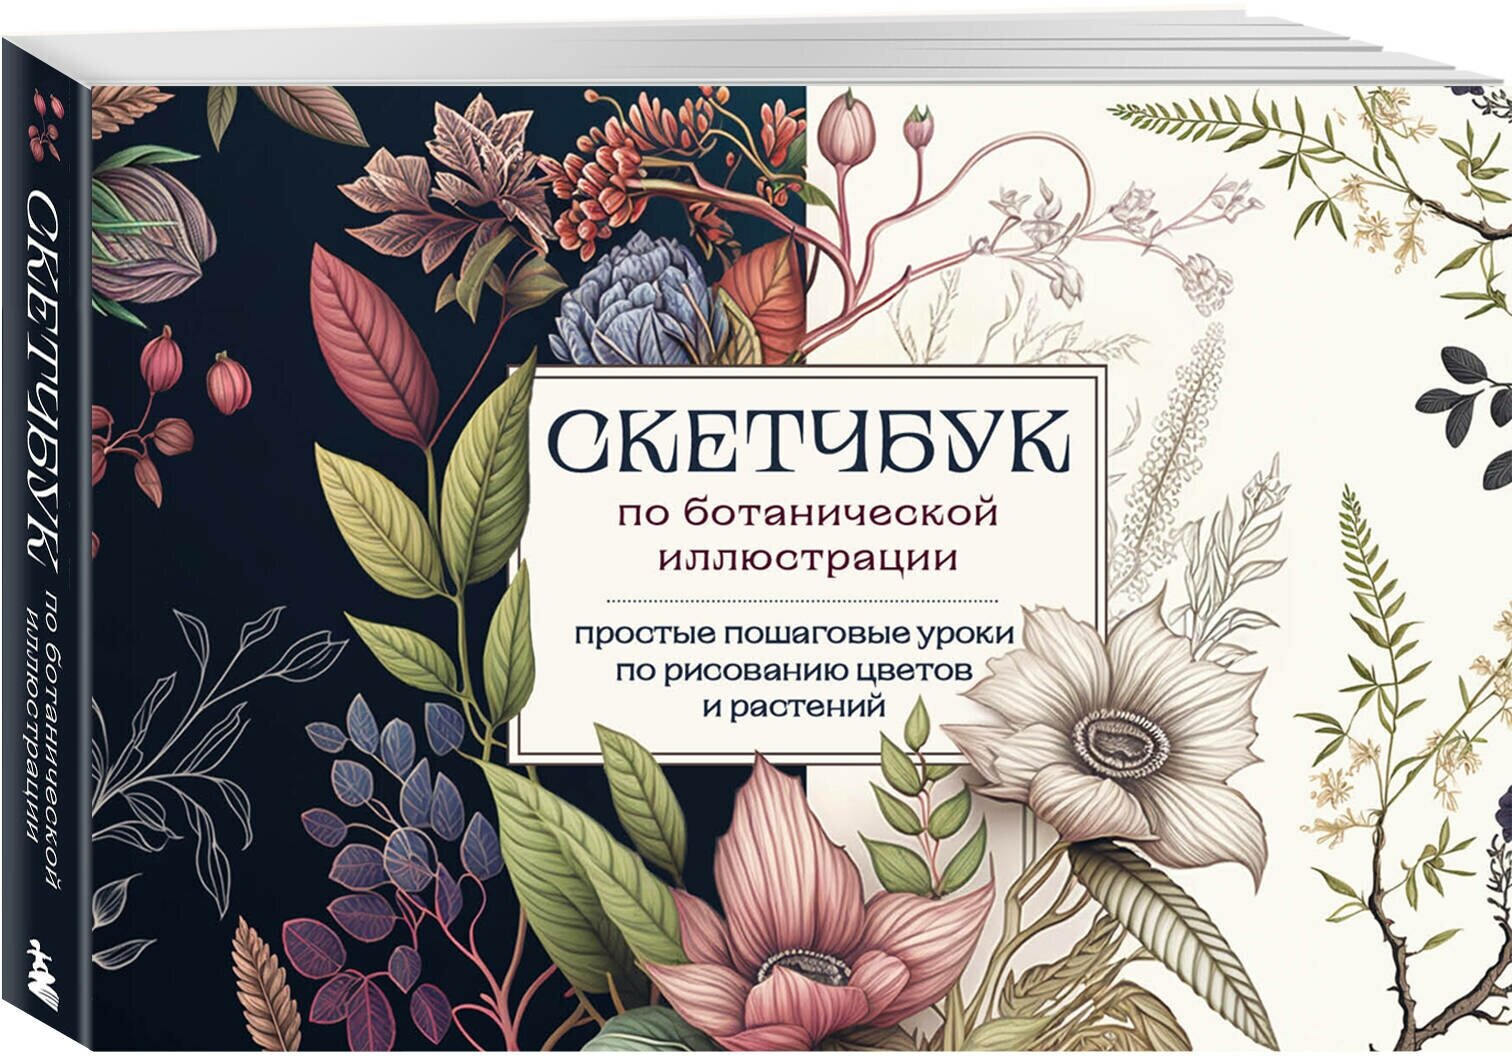 Николаева А. Н. Скетчбук по ботанической иллюстрации. Простые пошаговые уроки по рисованию цветов и растений